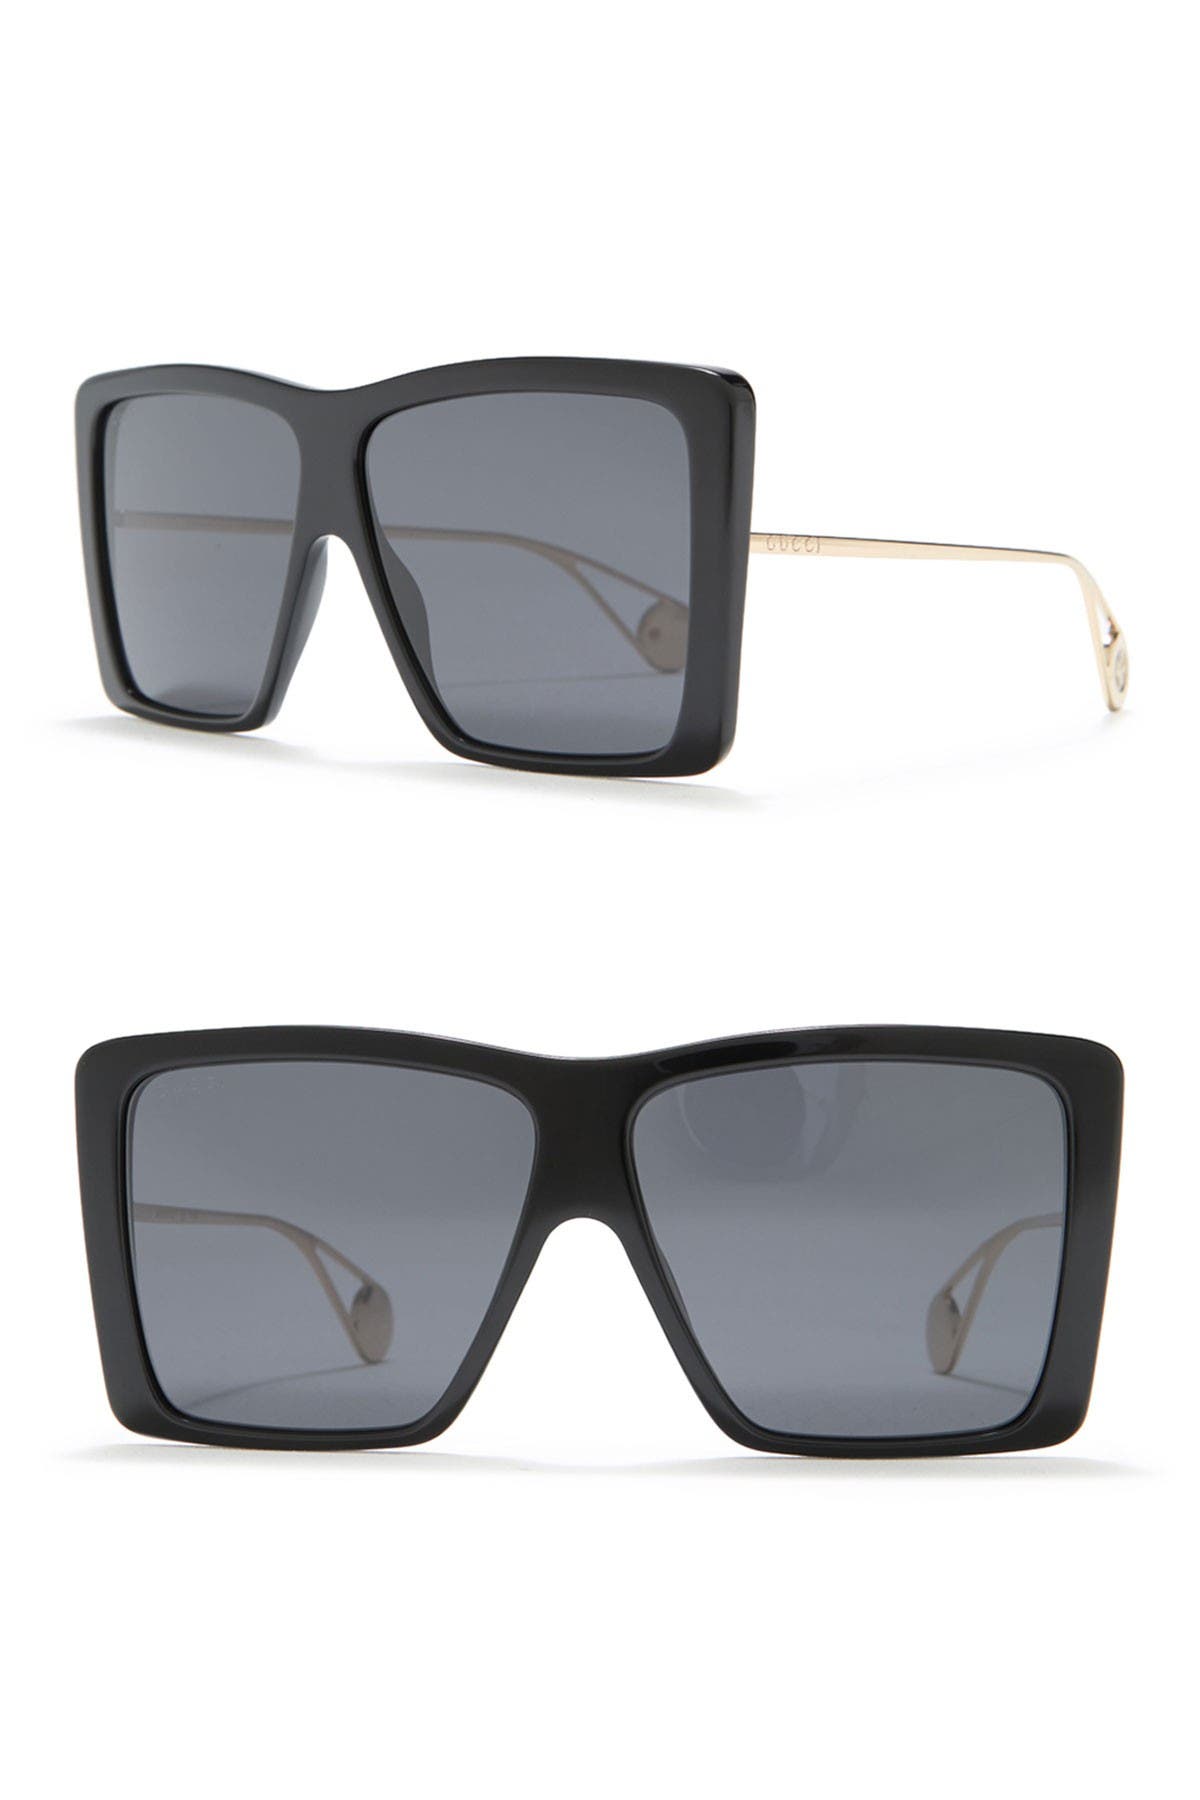 gucci 61mm square sunglasses